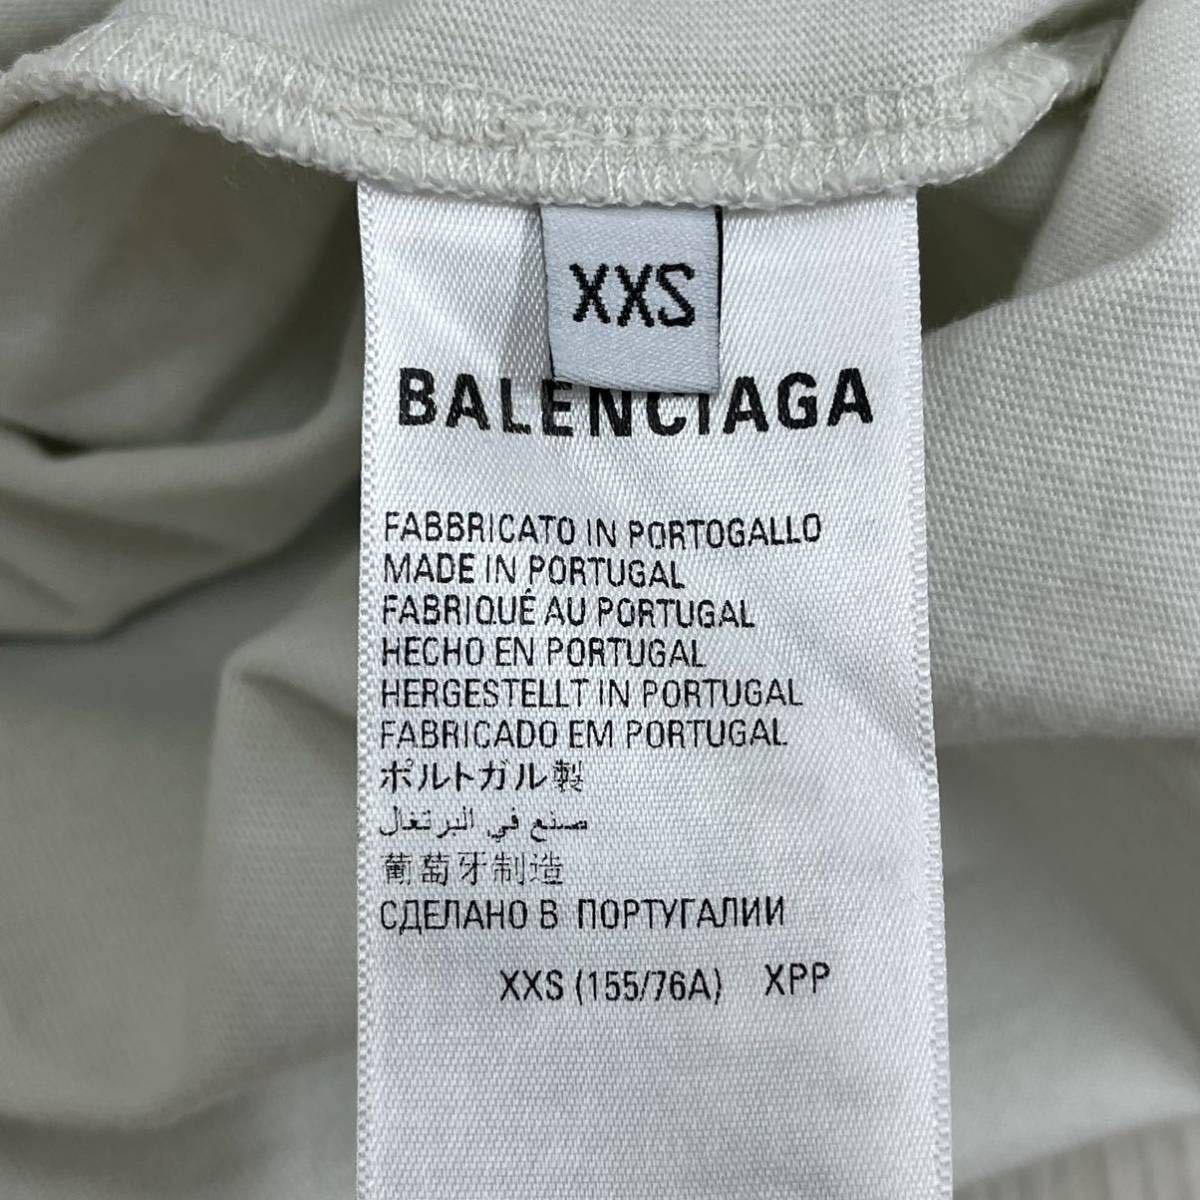 BALENCIAGA バレンシアガ キャンペーンロゴ刺繍 ラージフィット 半袖 Tシャツ ユニセックス 641655 TKVJ1 9084